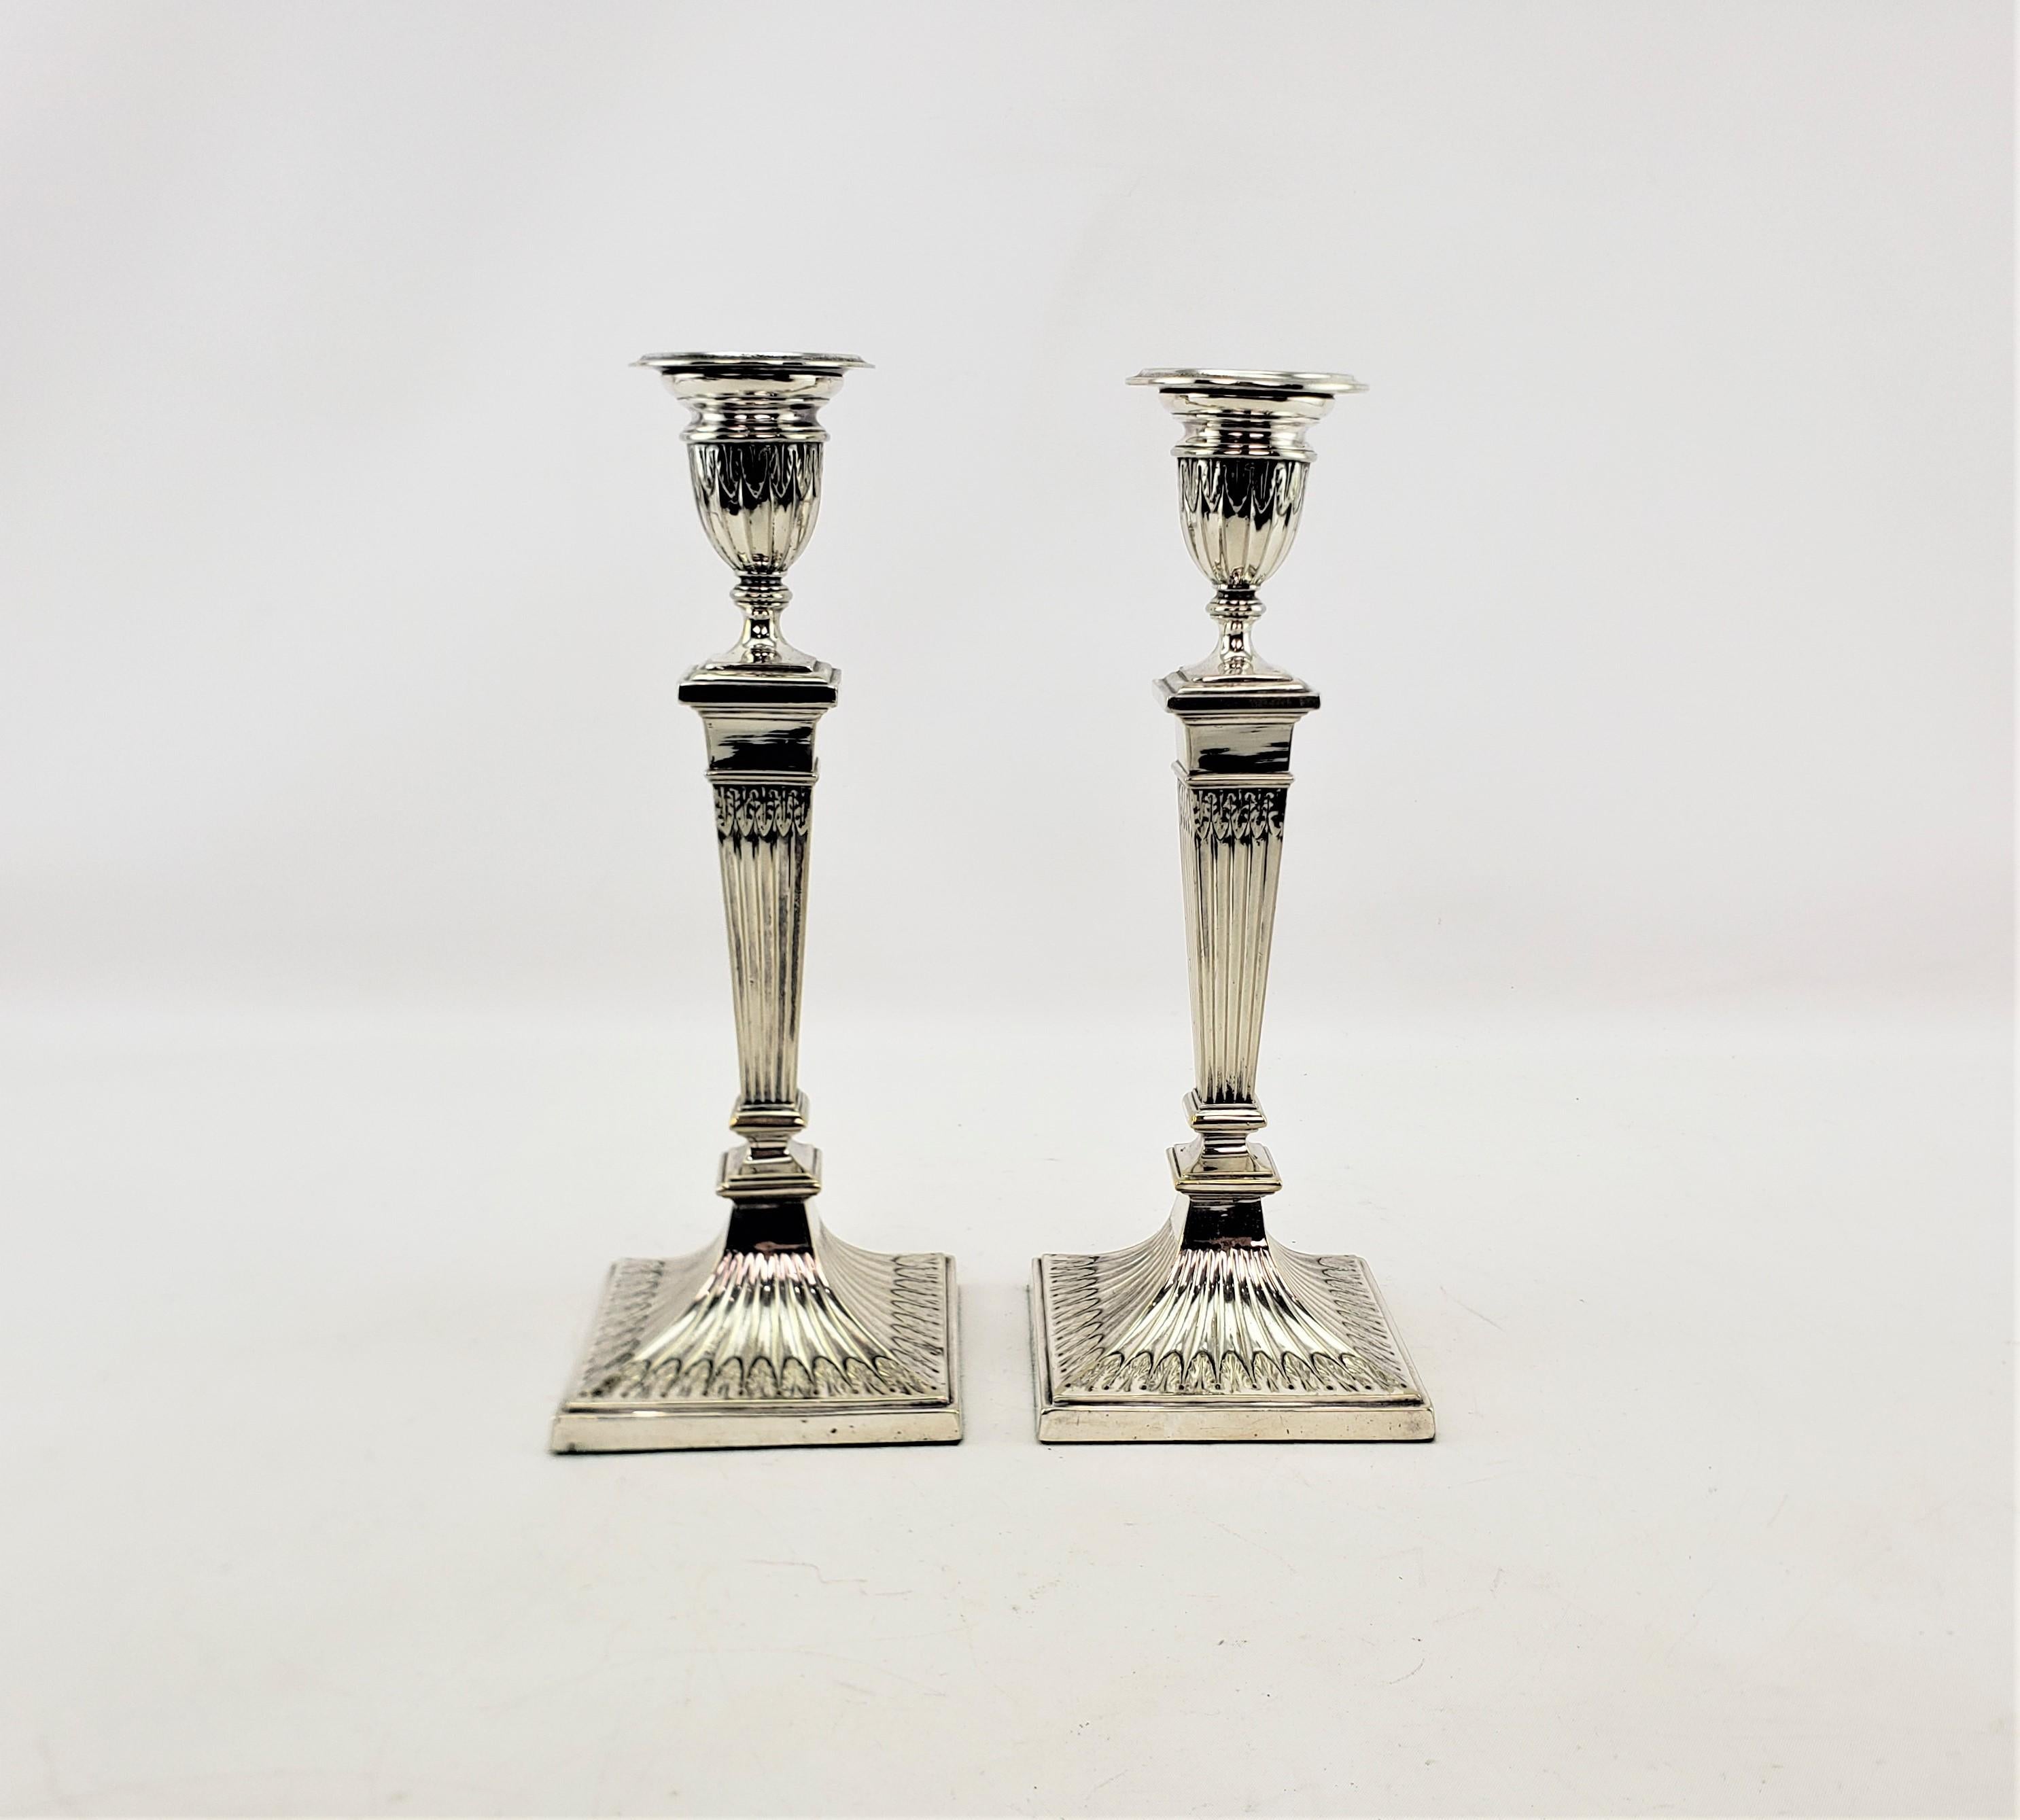 Cette paire de chandeliers anciens a été fabriquée par la célèbre société Elkington d'Angleterre vers 1920 dans un style Art déco d'époque. Les chandeliers sont en métal argenté et présentent un décor de feuilles stylisées sur le pourtour des